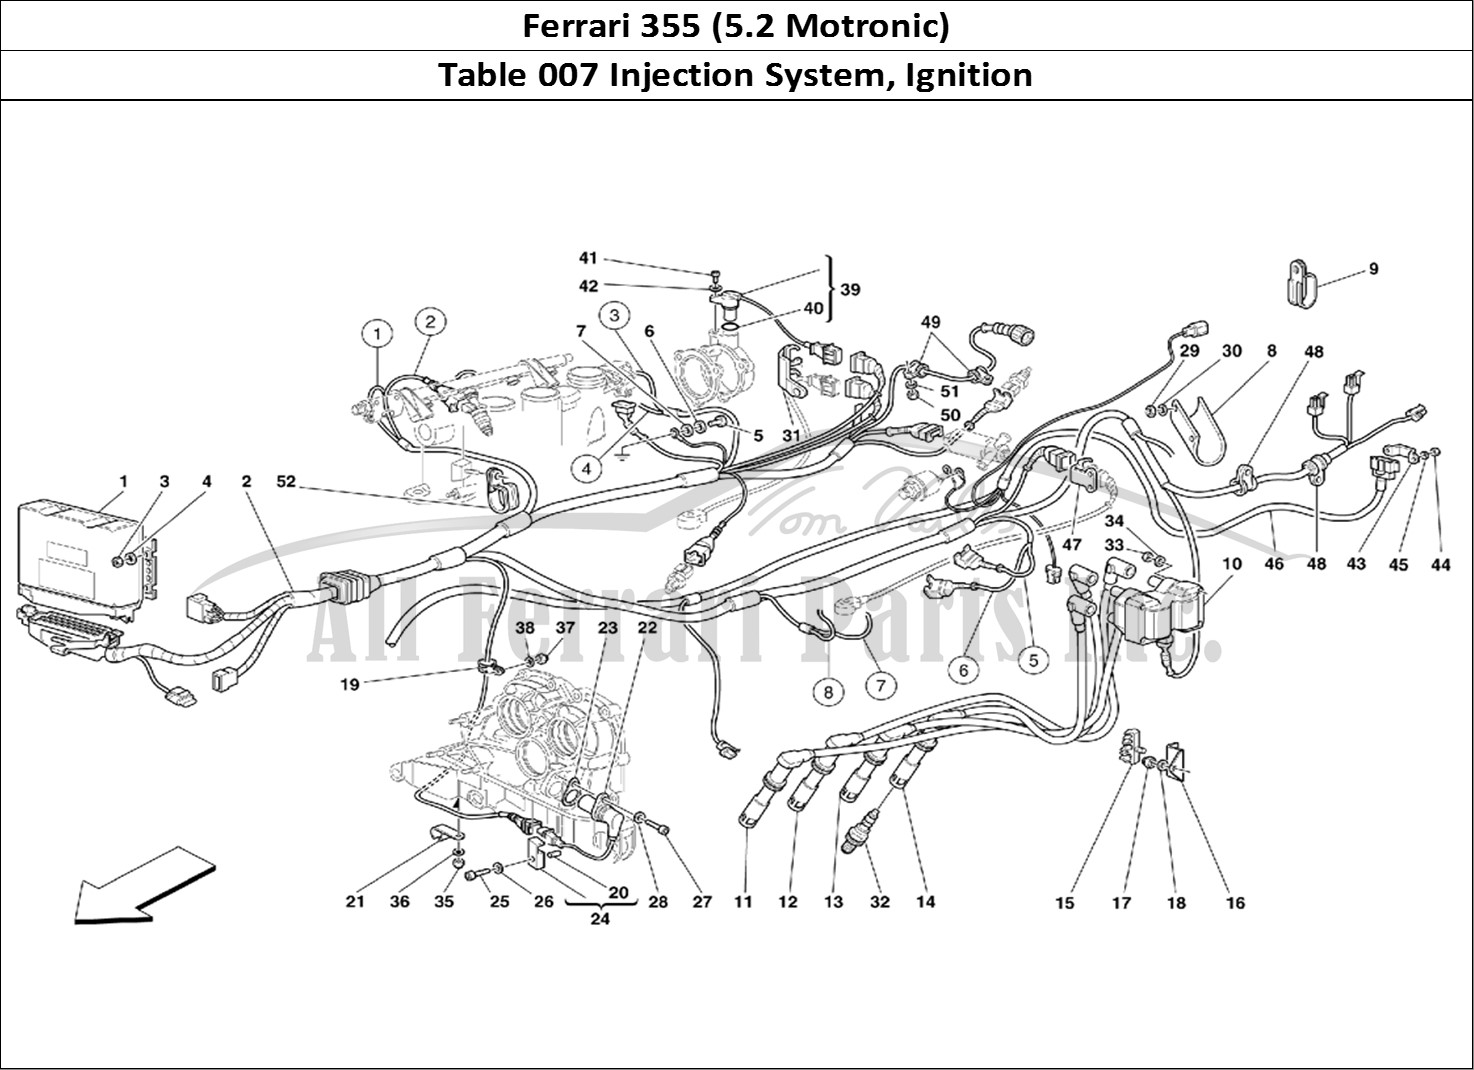 Ferrari Parts Ferrari 355 (5.2 Motronic) Page 007 Injection Device - Igniti